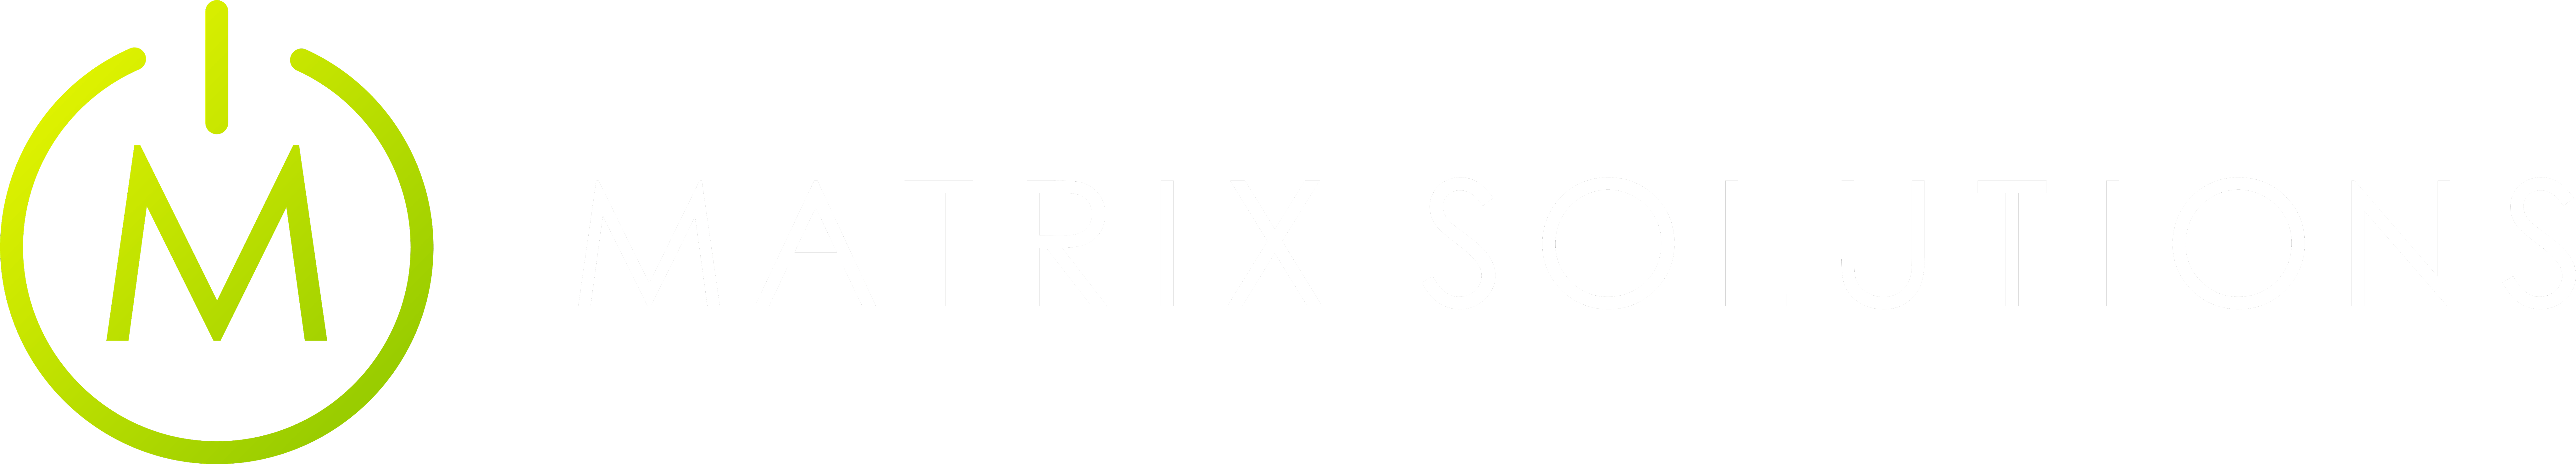 Matrix Solutions Official Logo